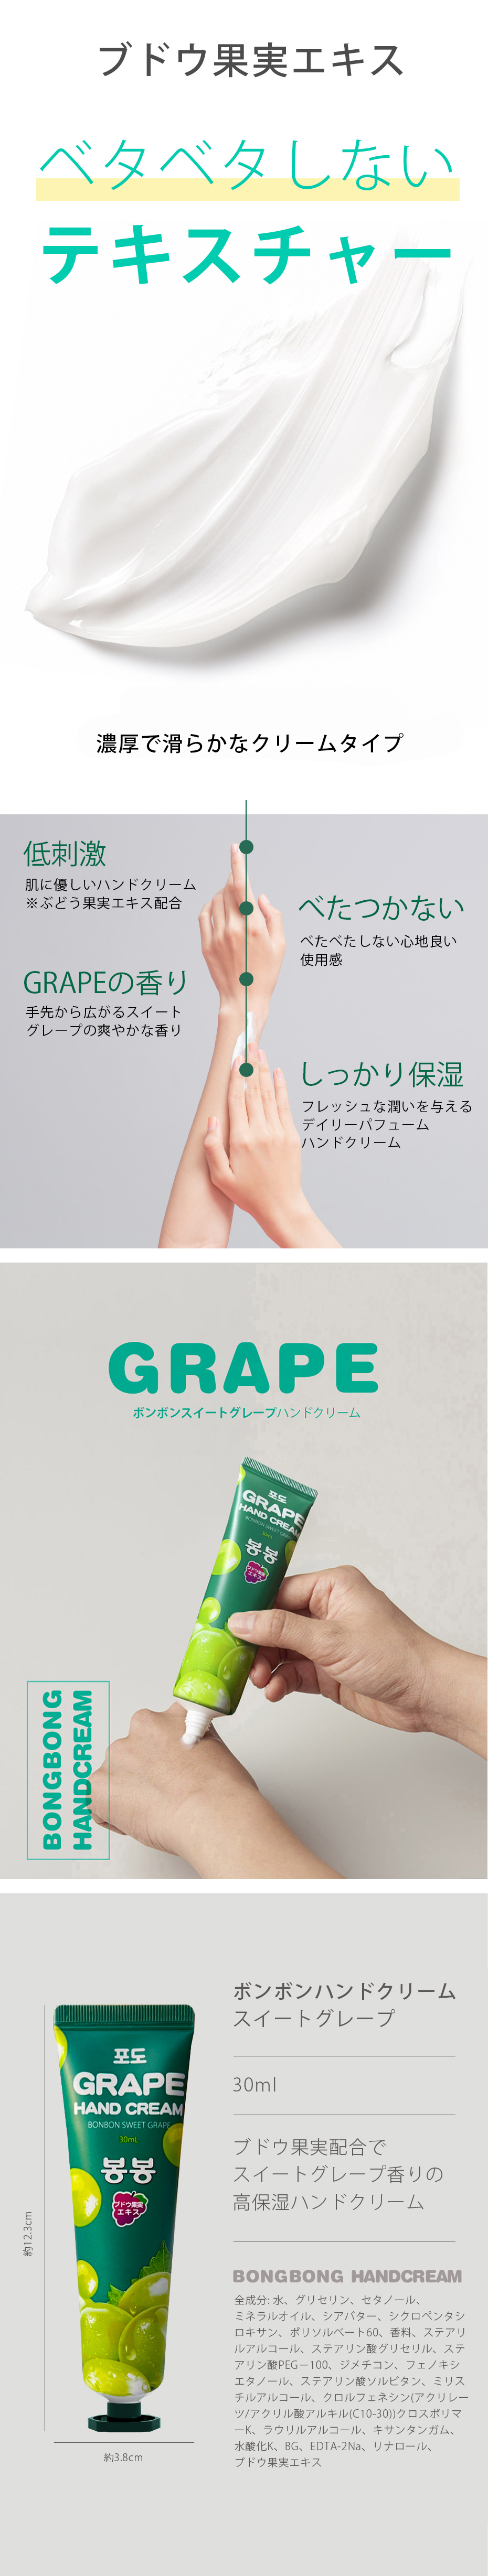 GRAPE HAND CREAM/ボンボンハンドクリーム/グレープの香り